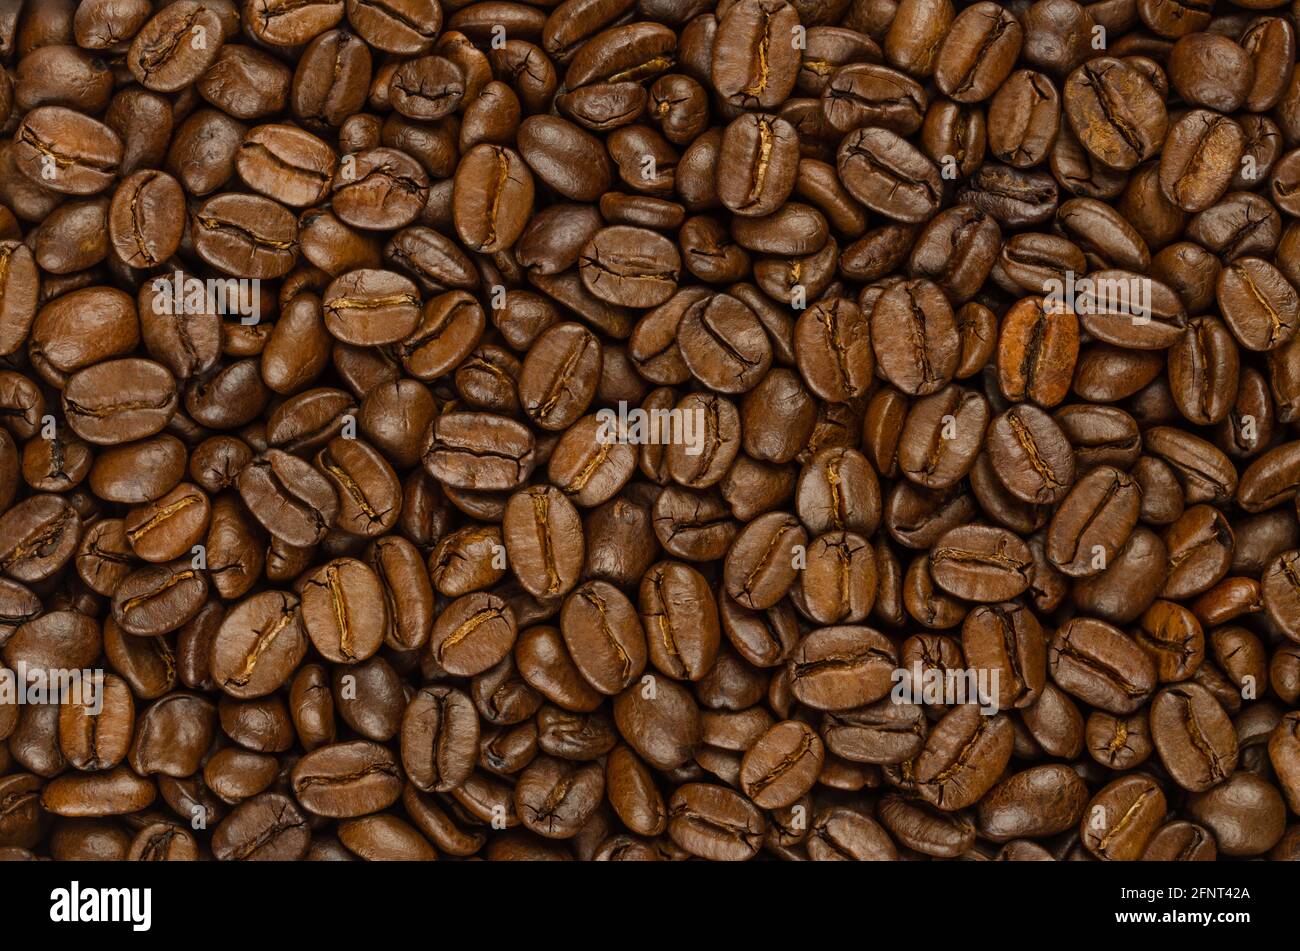 Geröstete Kaffeebohnen, Hintergrund, von oben. Dunkelbraune, geröstete Samen von Beeren aus Coffea arabica, auch bekannt als arabischer oder arabica-Kaffee. Stockfoto